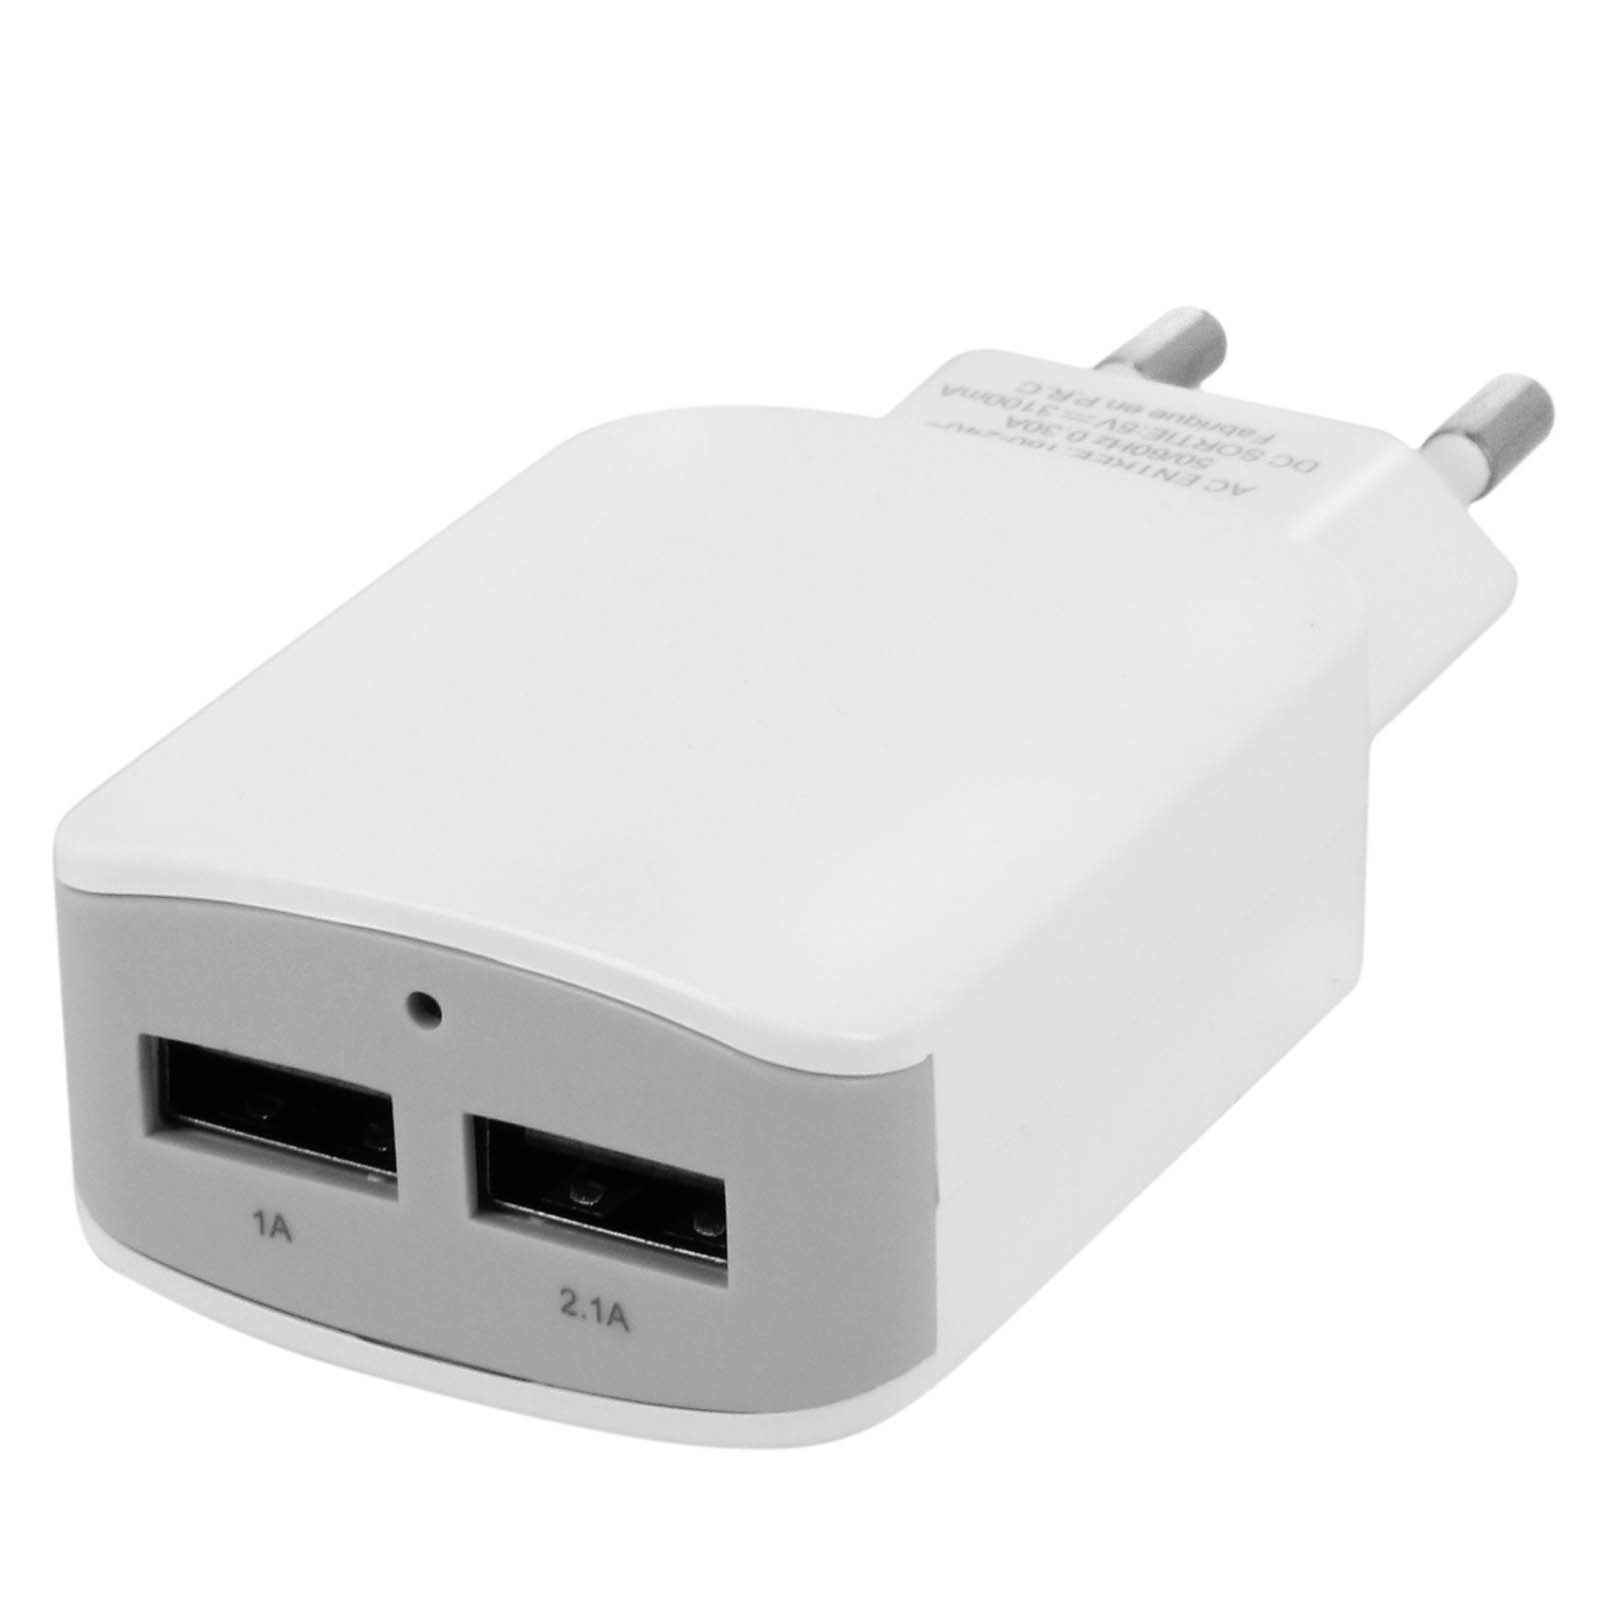 Weiß AVIZAR Netzteil, USB Wand-Ladegerät 3.1A Netzteile Universal,